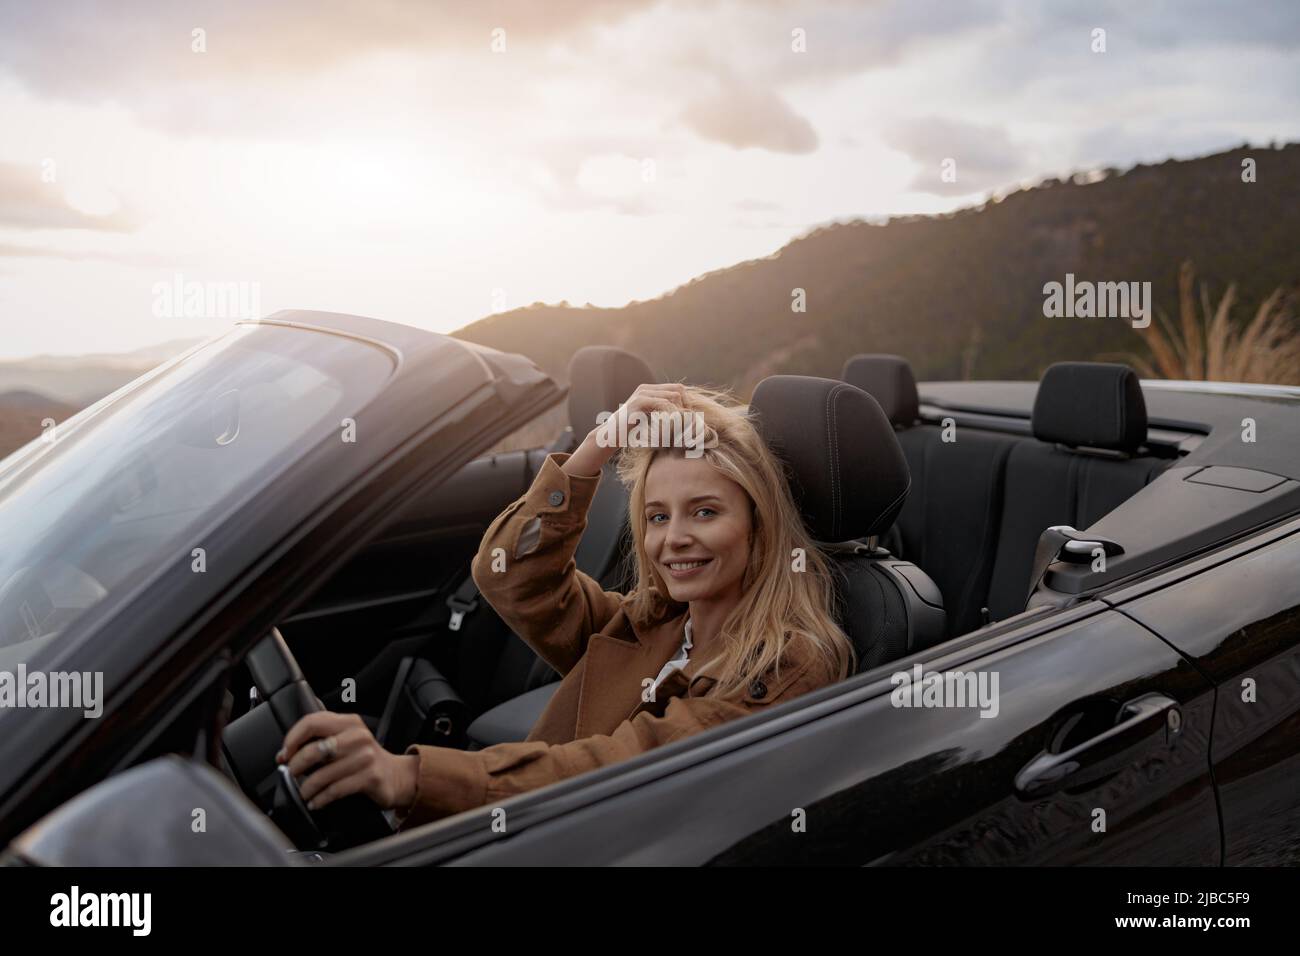 Nahaufnahme des Porträts einer fröhlichen jungen hübschen Frau, die beim Fahren eines Cabrios lächelt Stockfoto